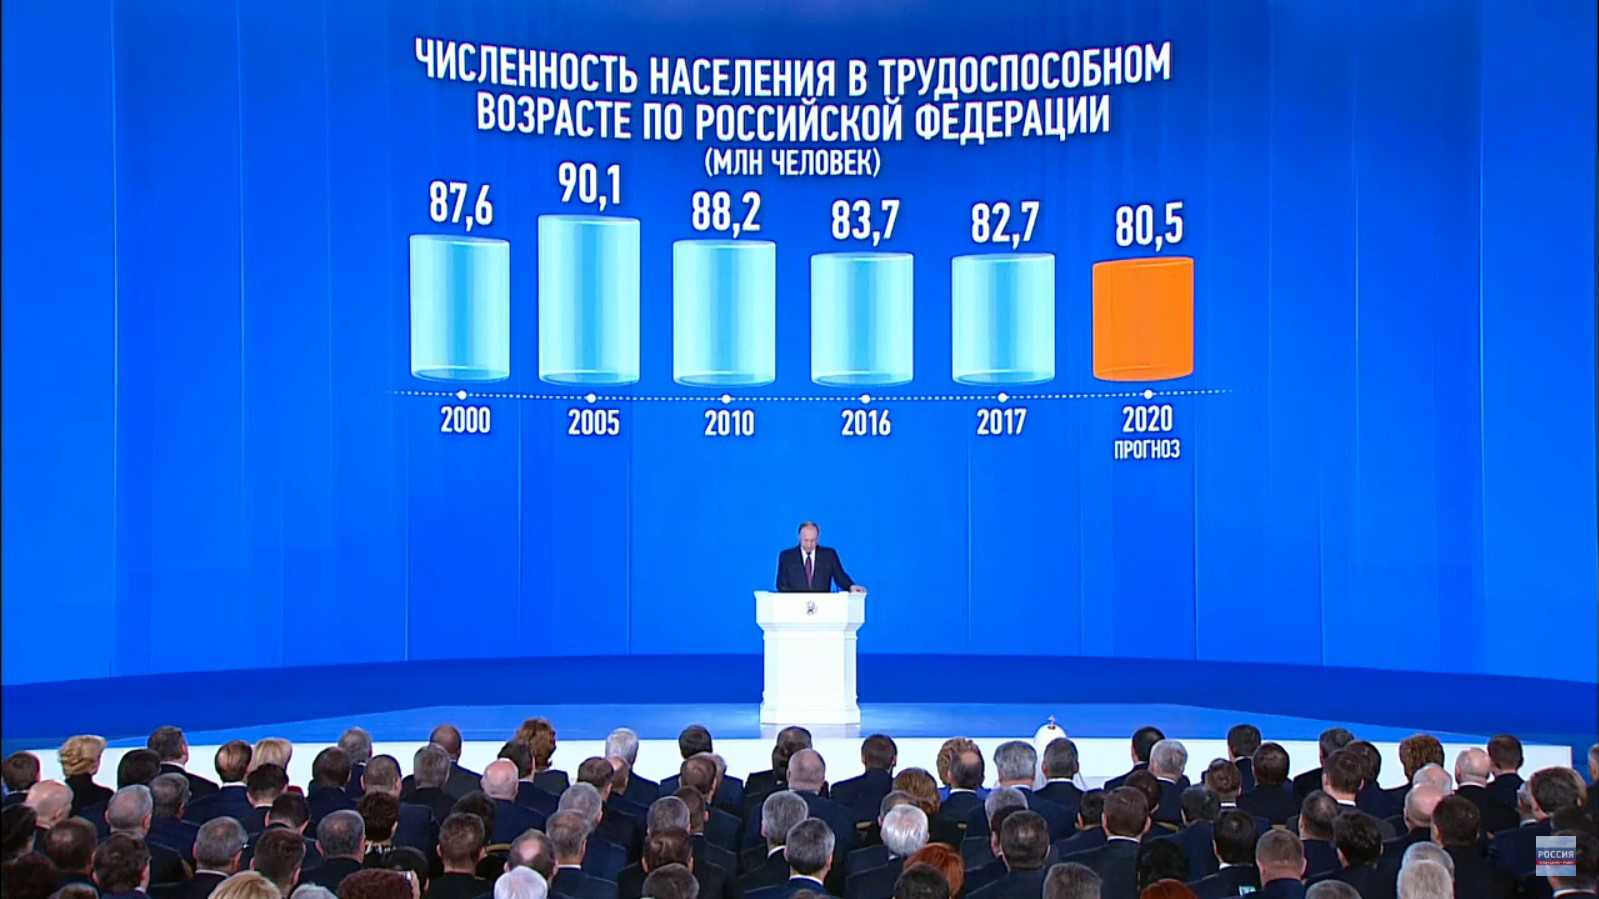 Статистика численности населения в трудоспособном возрасте по РФ, 2000 — 2020 гг.